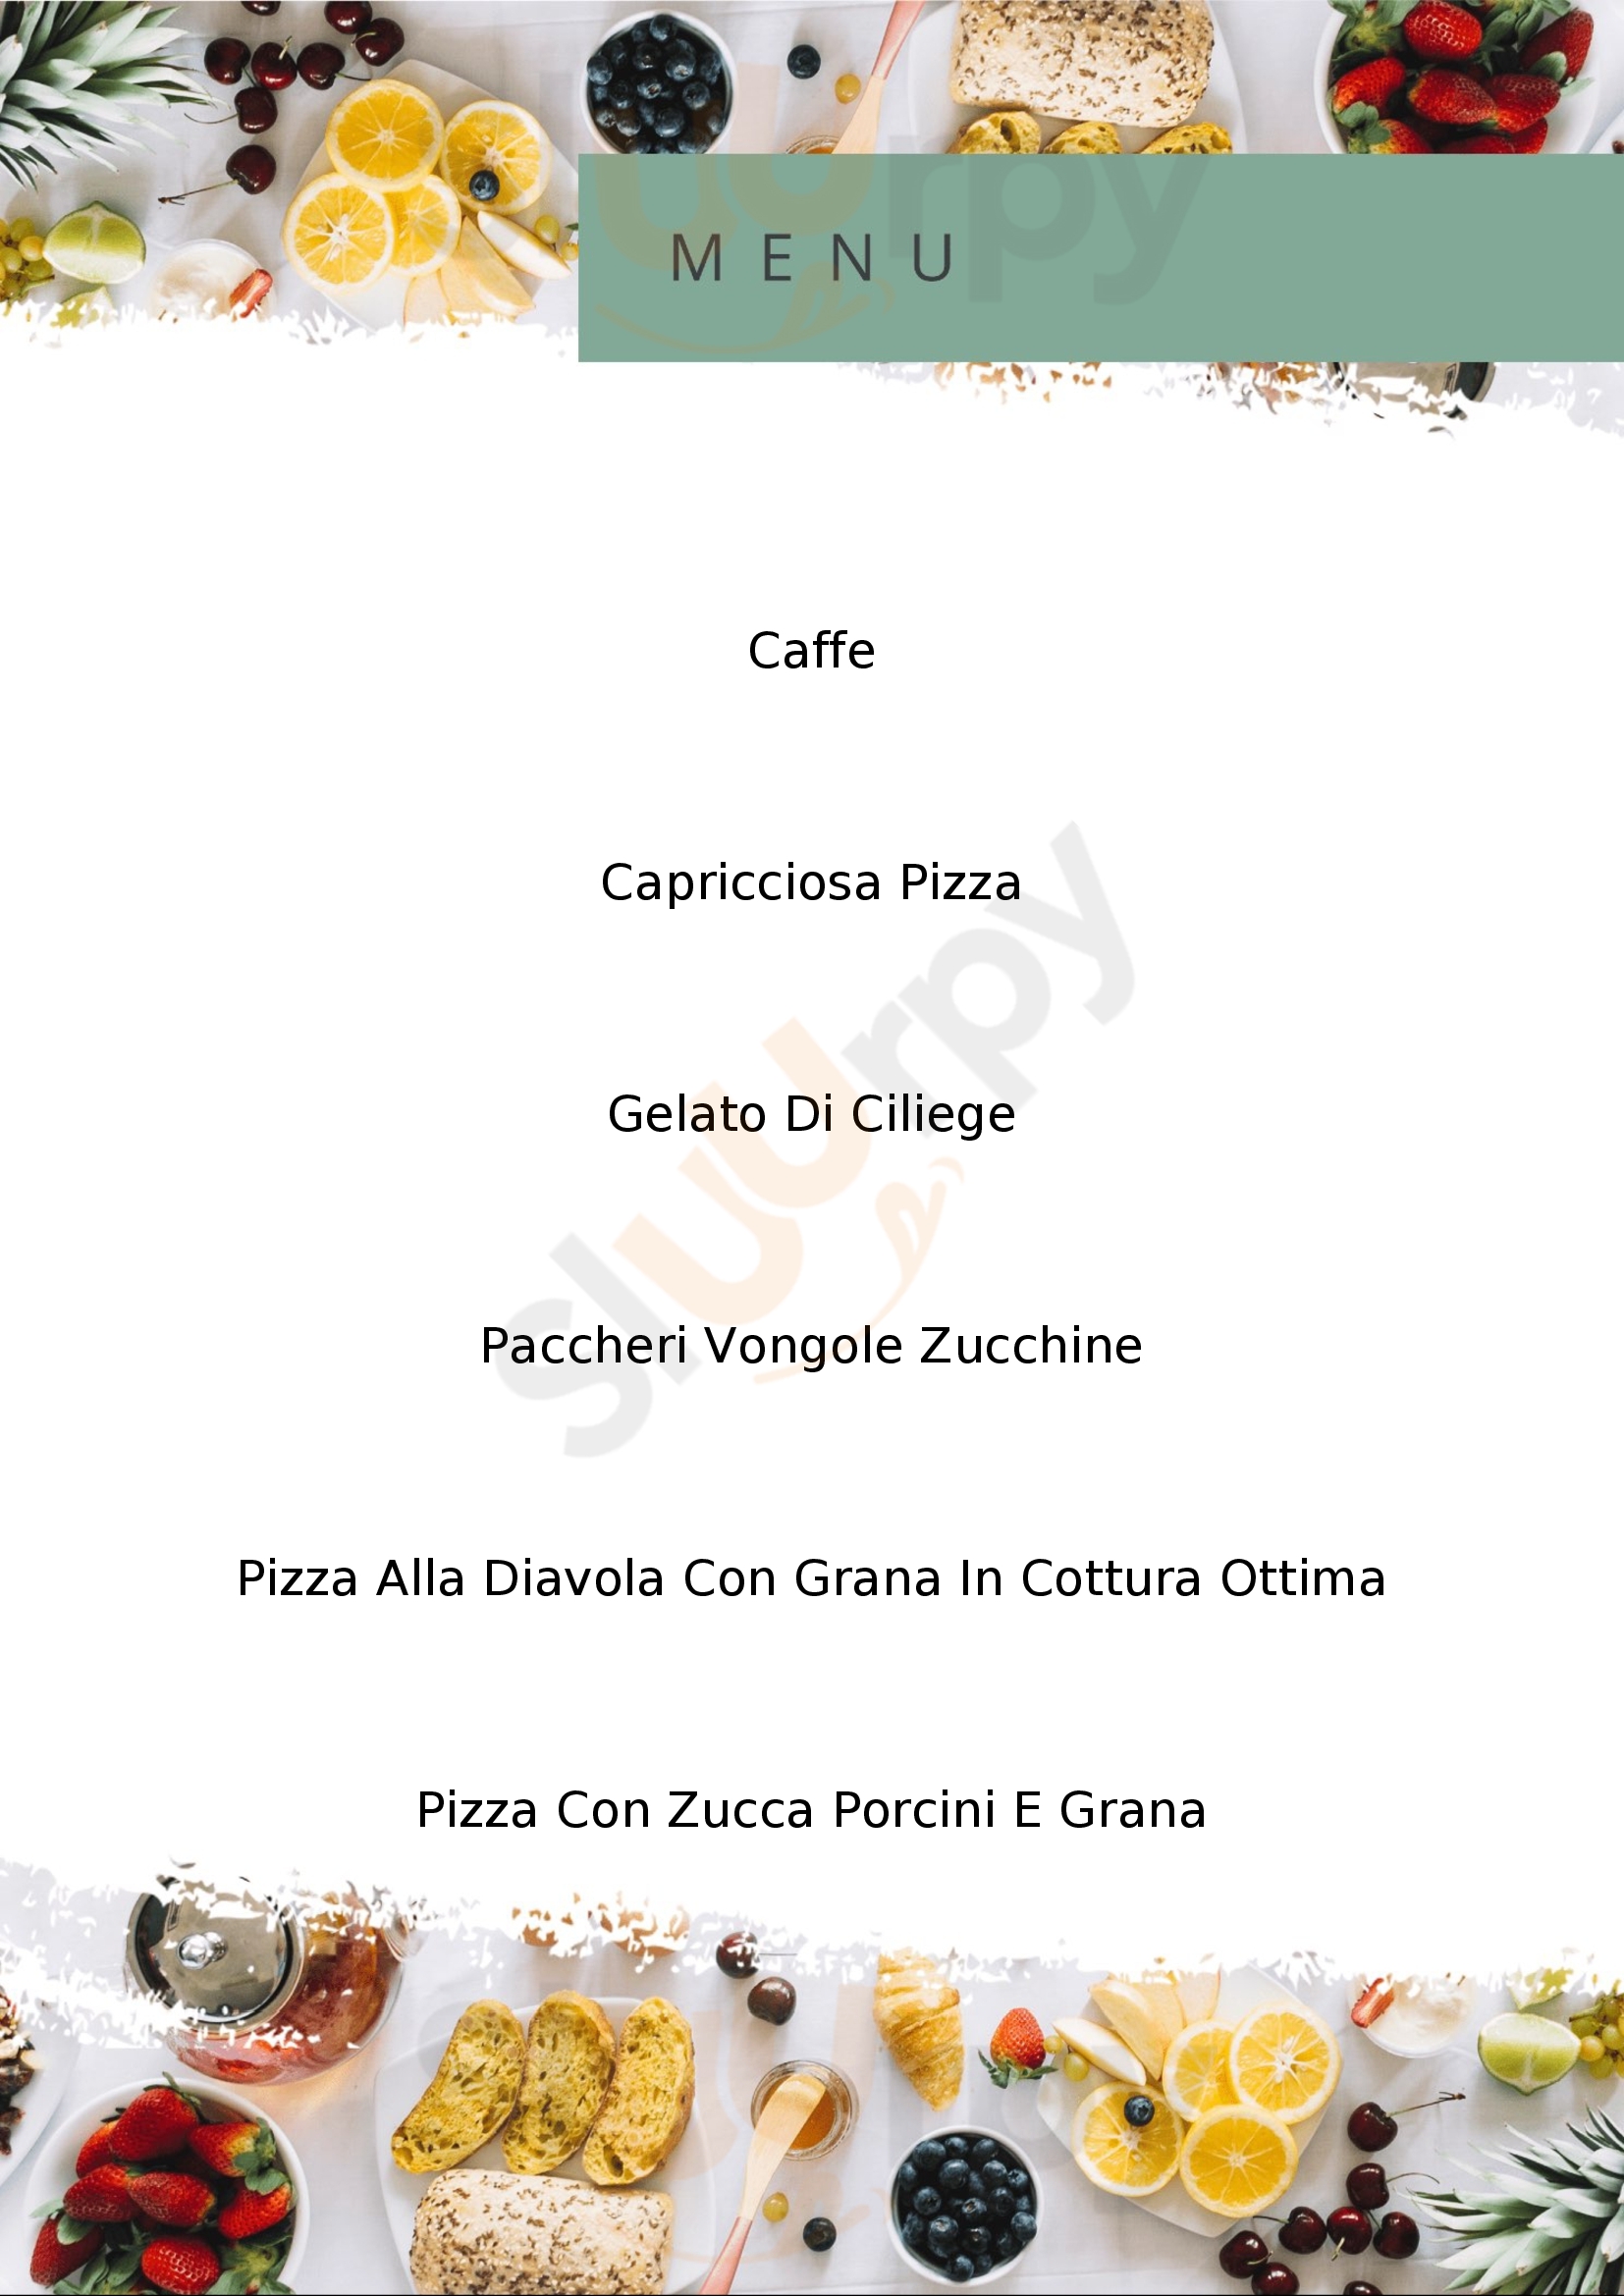 Pizzeria Pulcinella Spinea menù 1 pagina